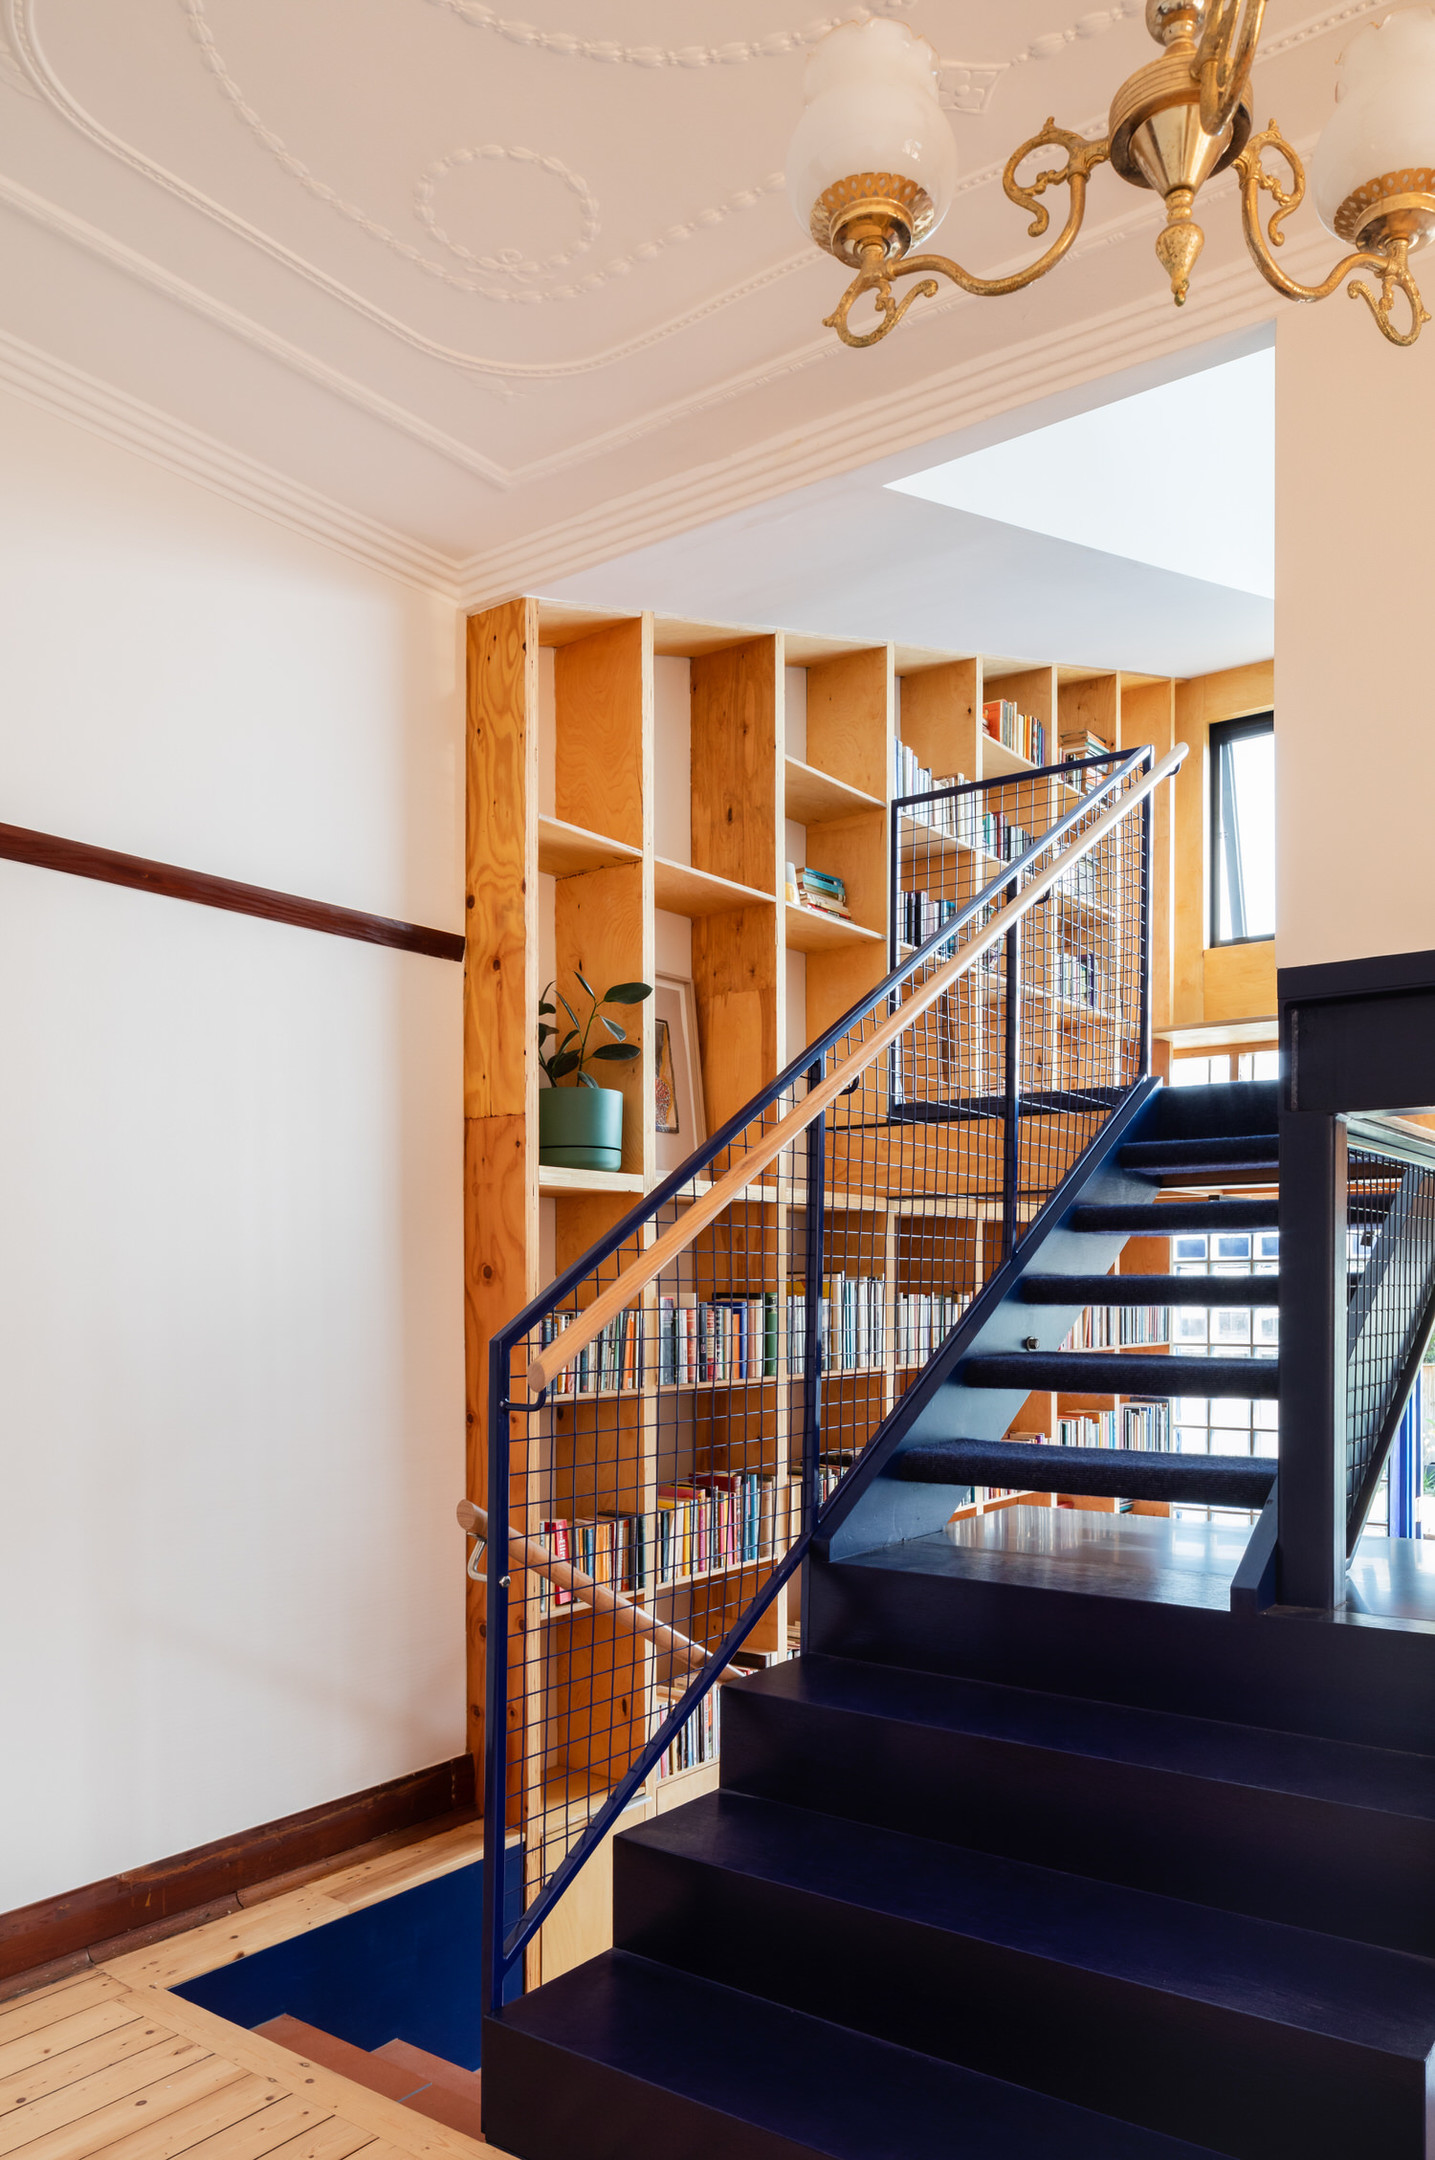 Tầng 1 và tầng 2 được chuyển tiếp bằng chiếc cầu thang màu xanh lam đậm vững chãi và nổi bật nhờ sắc màu tương phản với tổng thể. 